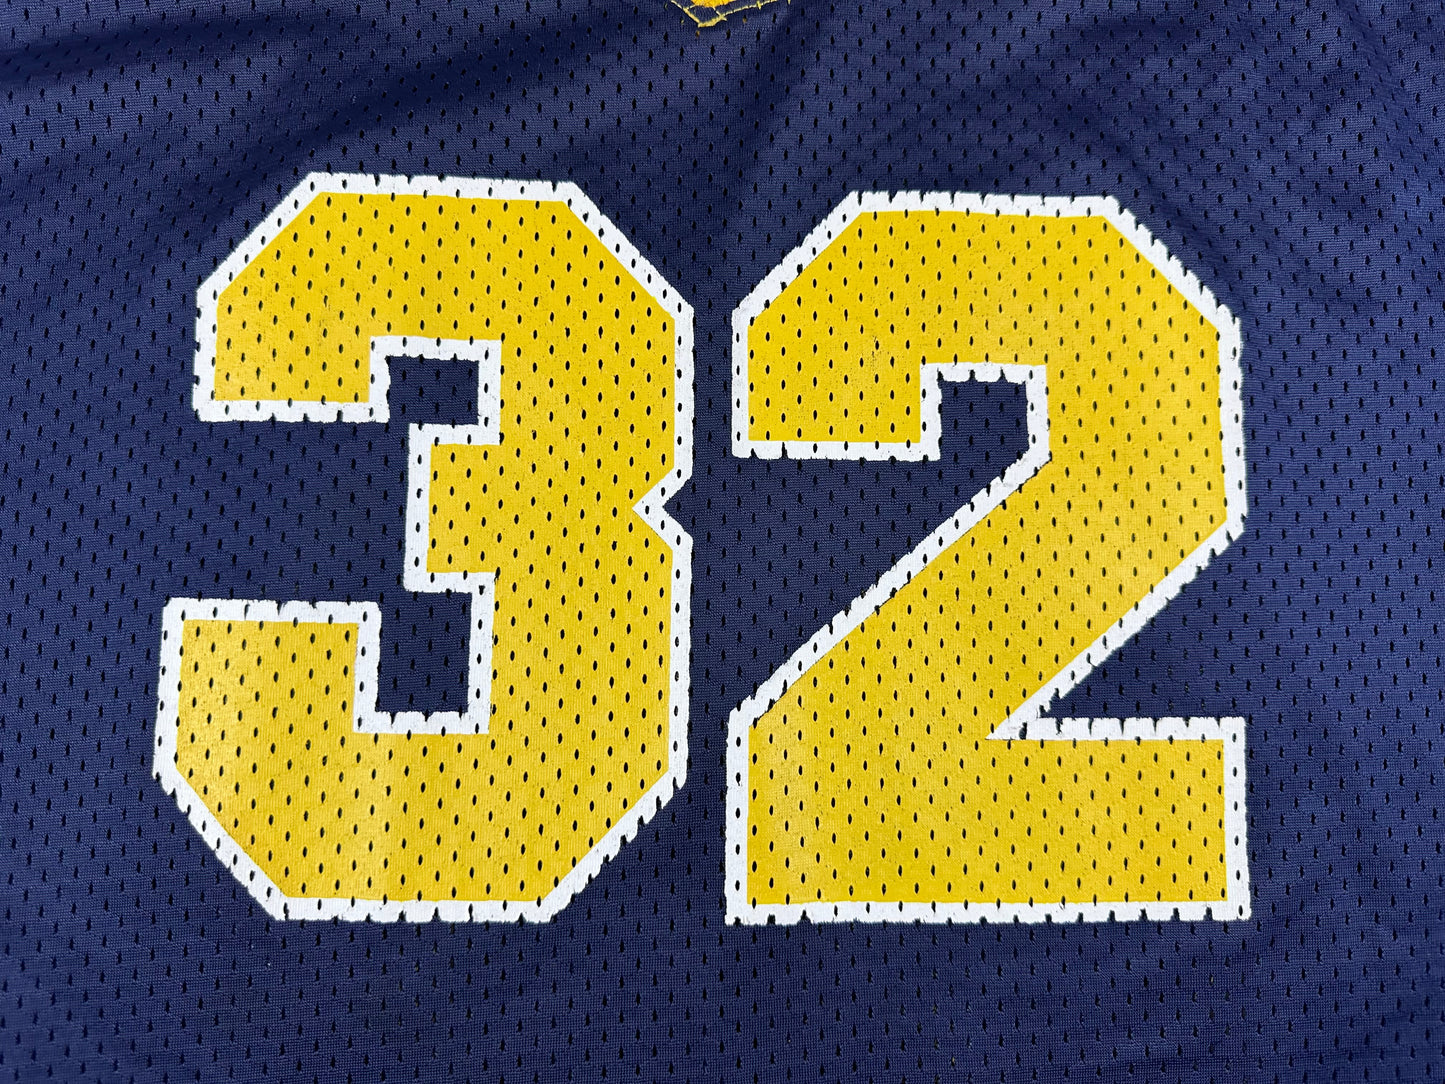 Michigan #32 Football Jersey